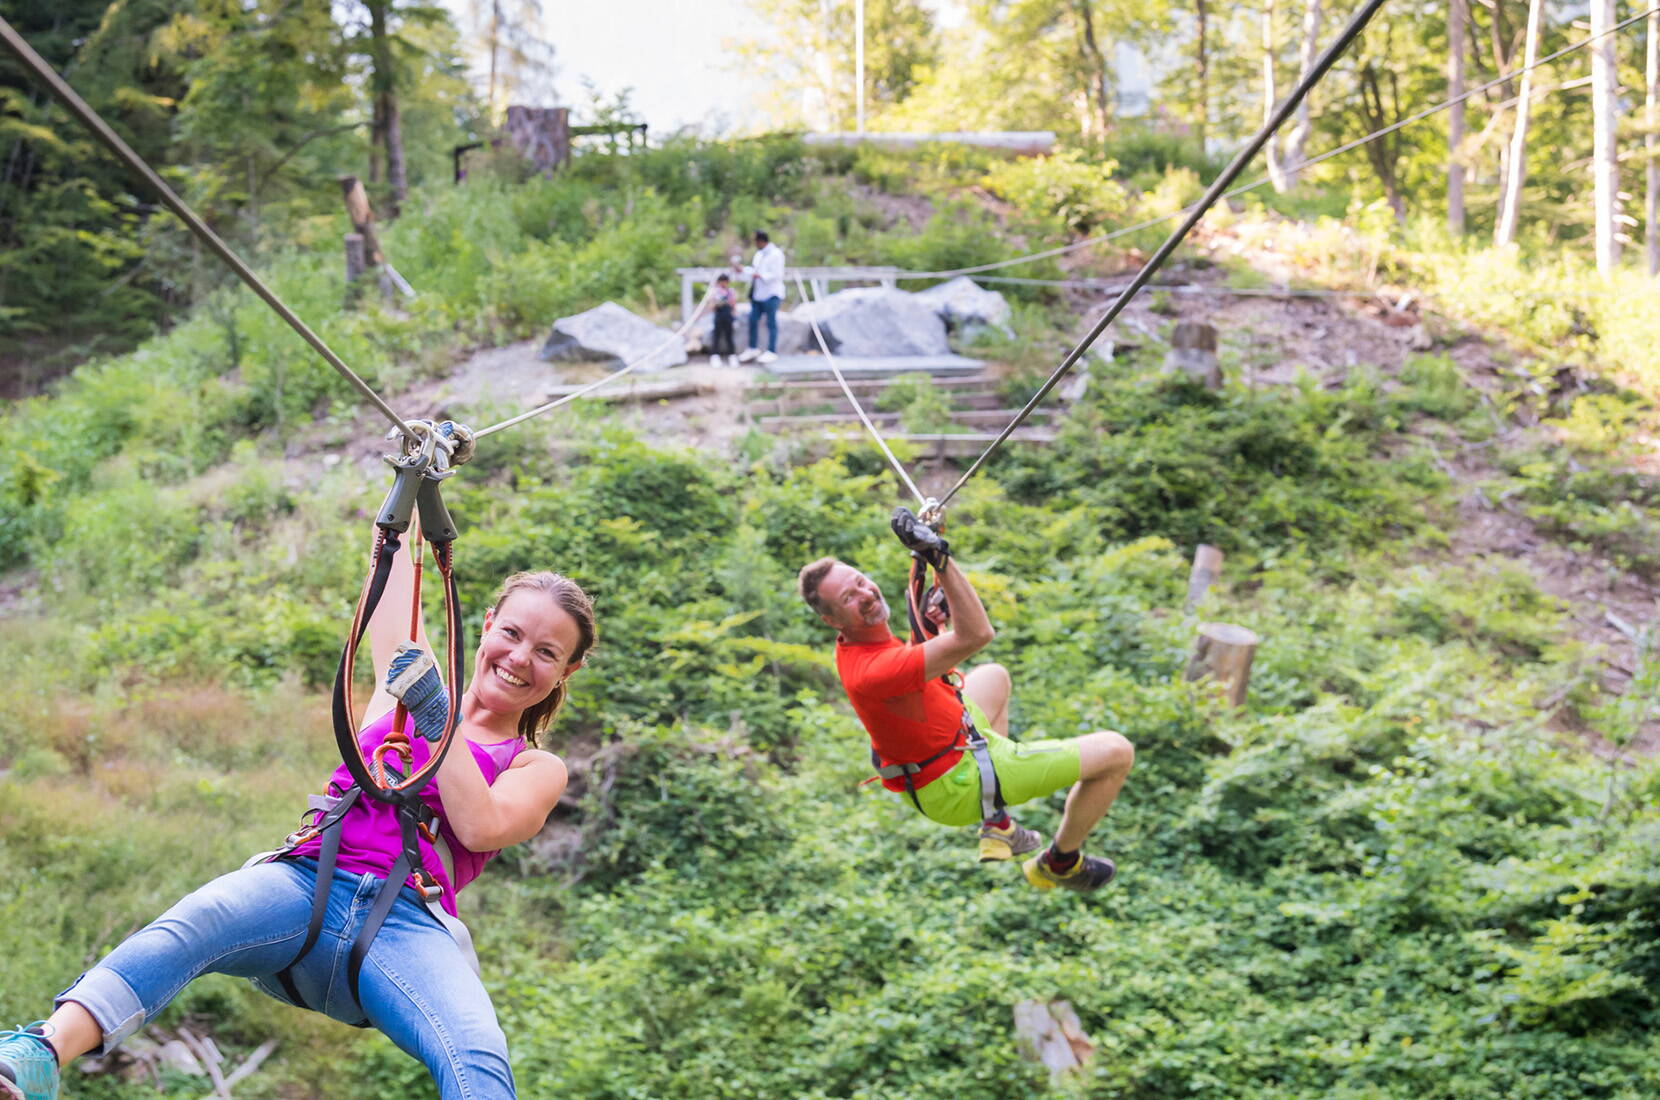 Ausflugsziele Bern - Familienausflug Seilpark Interlaken. Einsteigerparcours in Bodennähe bis hin zu knackigen Aufgaben in 20 Metern Höhe ist für jeden – ob kleiner Abenteurer, Adrenalin-Junkies aus aller Welt oder die ganze Familie - etwas dabei!